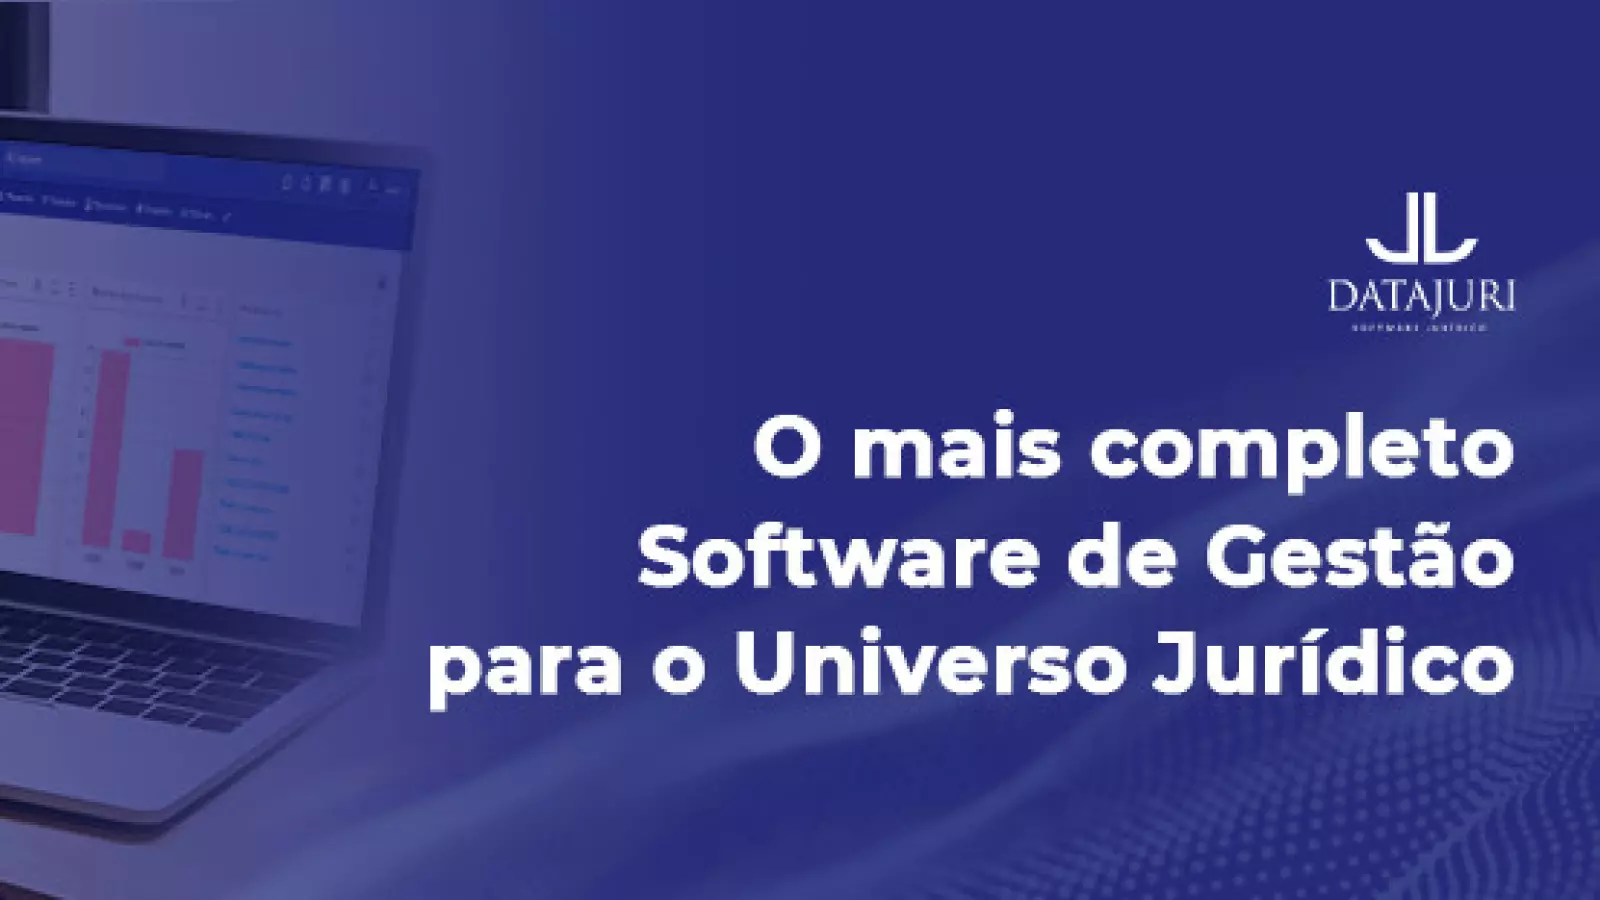 DataJuri - Software Jurídico